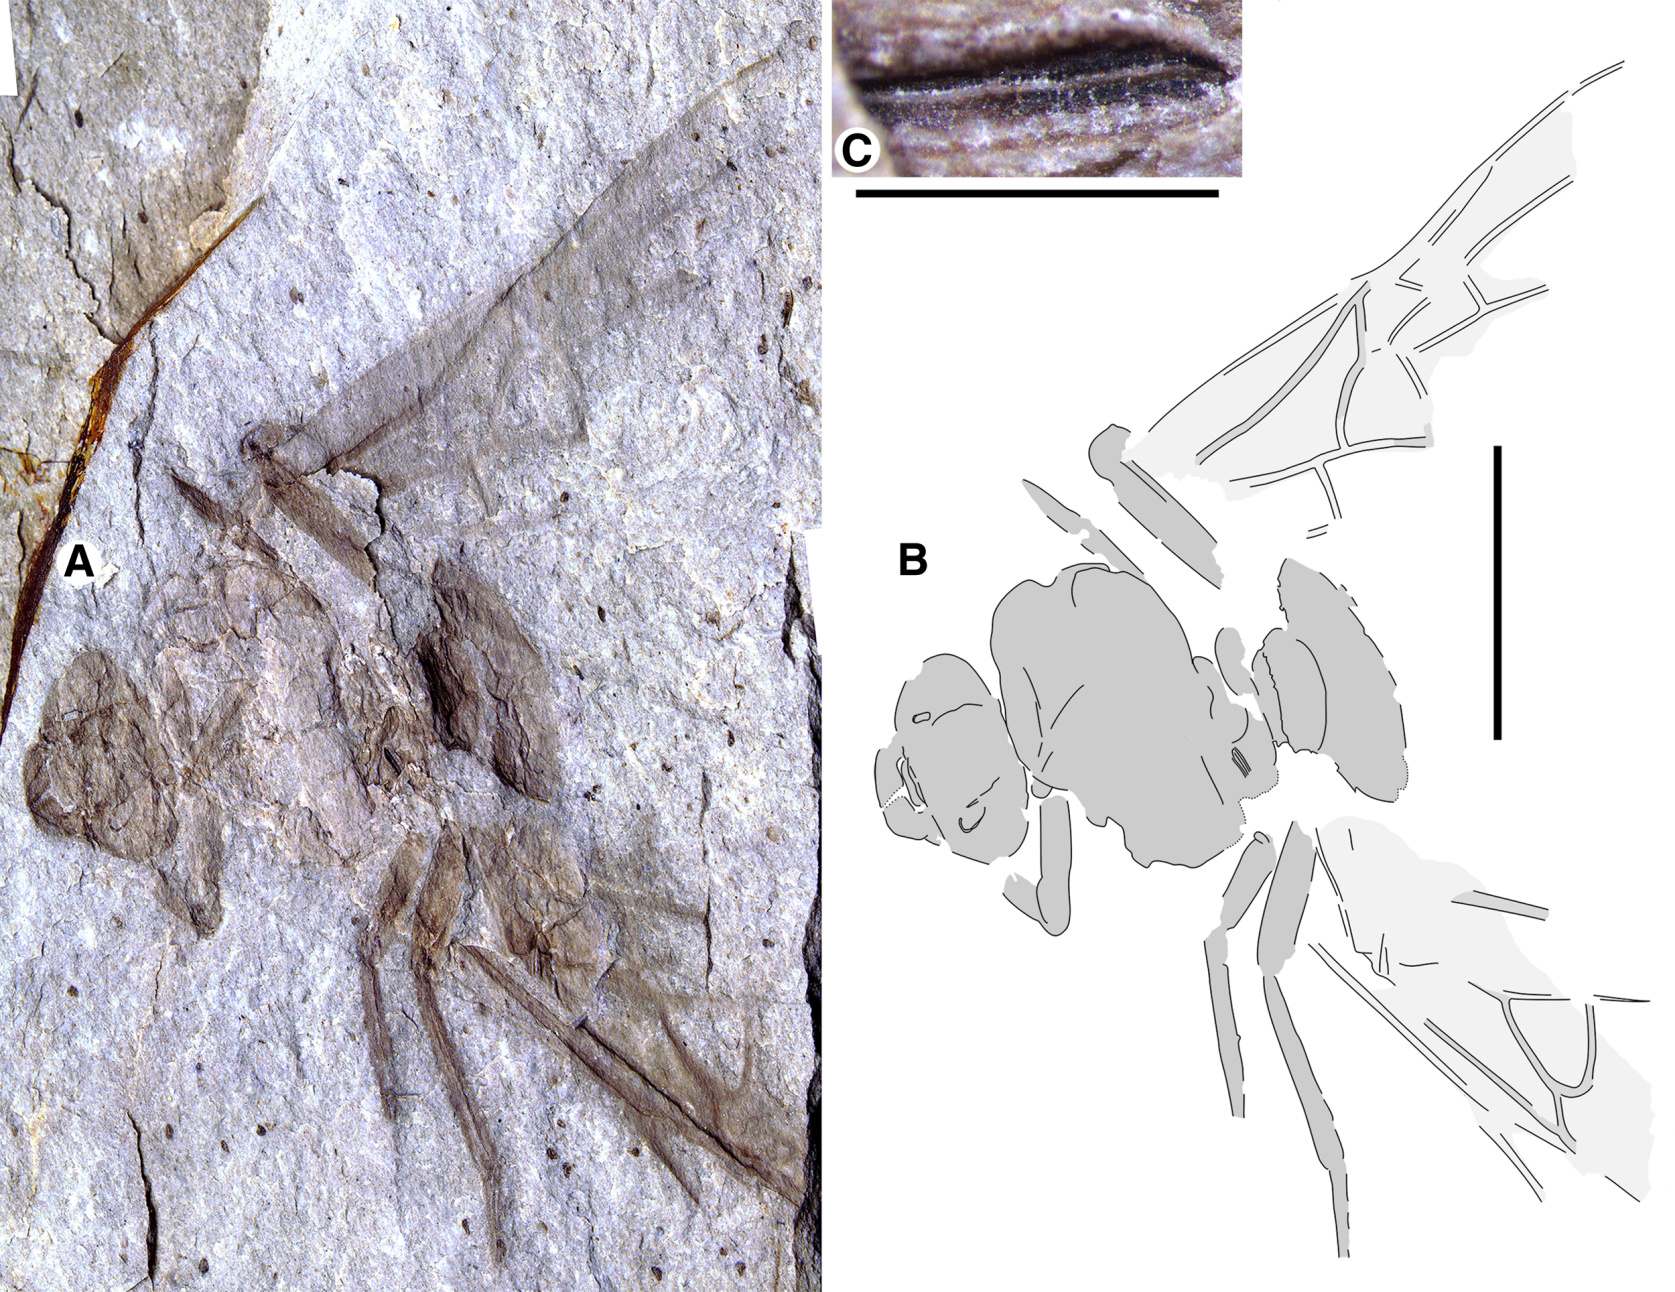 Den gigantiske fossile dronning myre Titanomyrma, for nylig opdaget i Allenby-formationen nær Princeton, British Columbia, den første af sin slags i Canada.